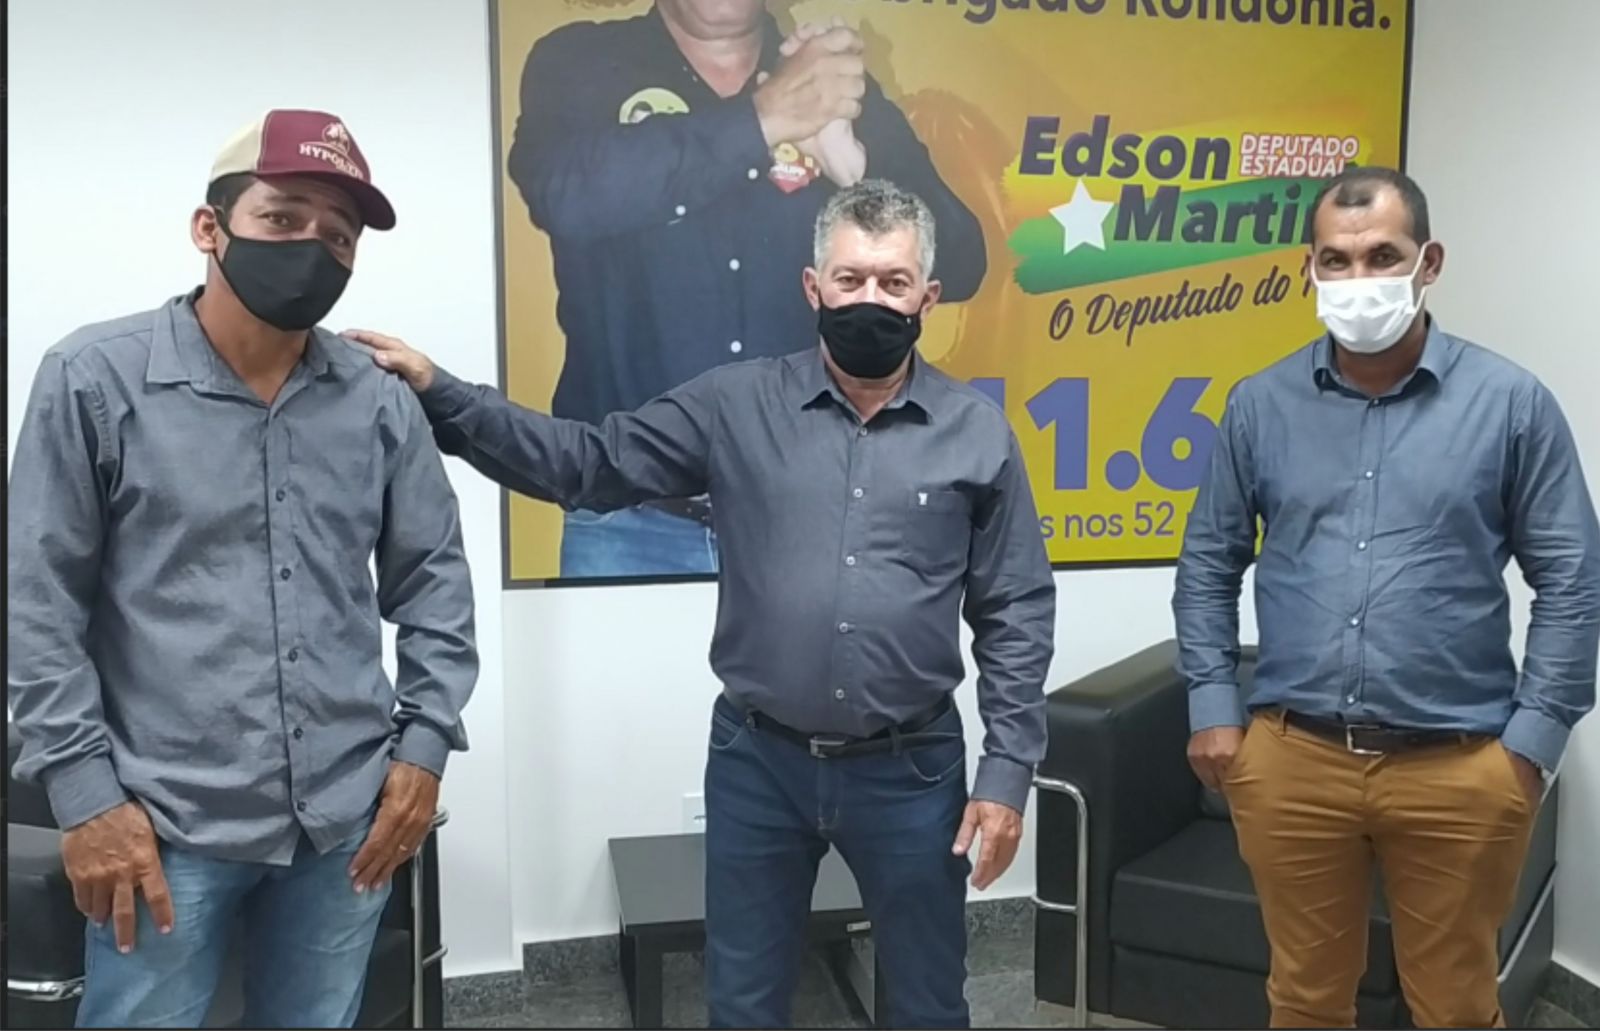 Nova Mamoré recebe materiais elétricos adquiridos com recurso do deputado Edson Martins - News Rondônia